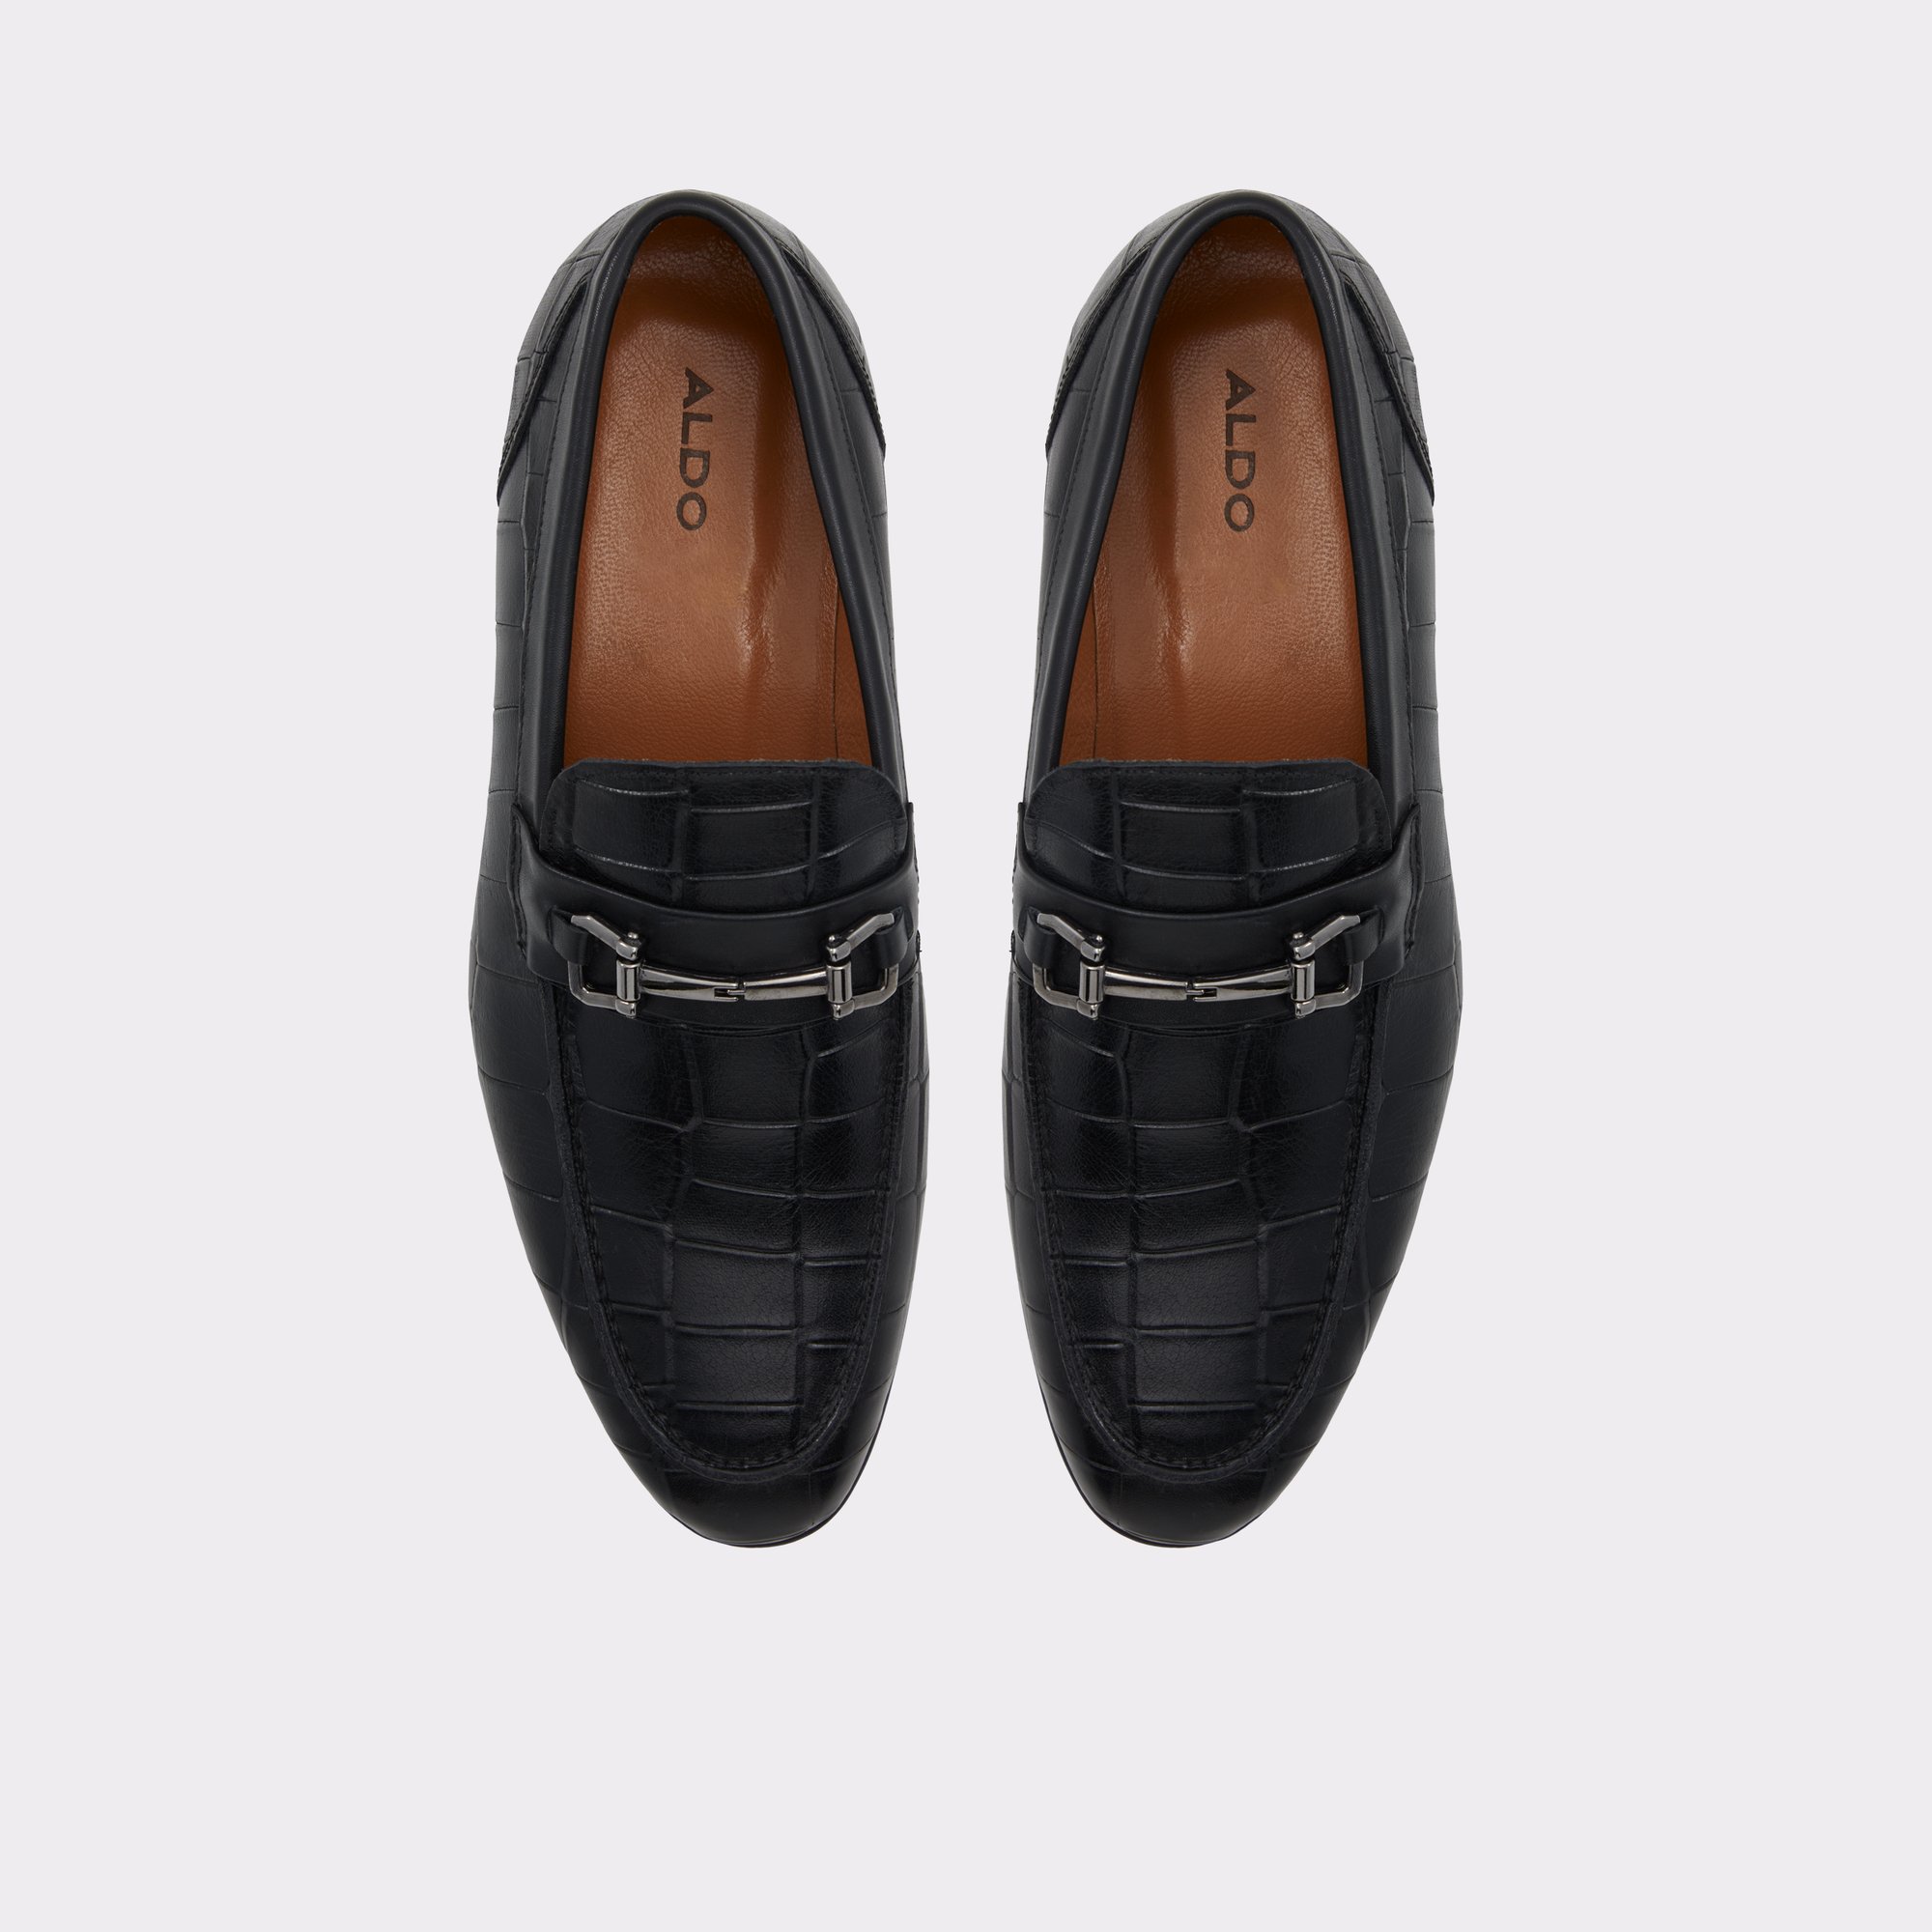 Esco Black Men's Dress Shoes | ALDO US